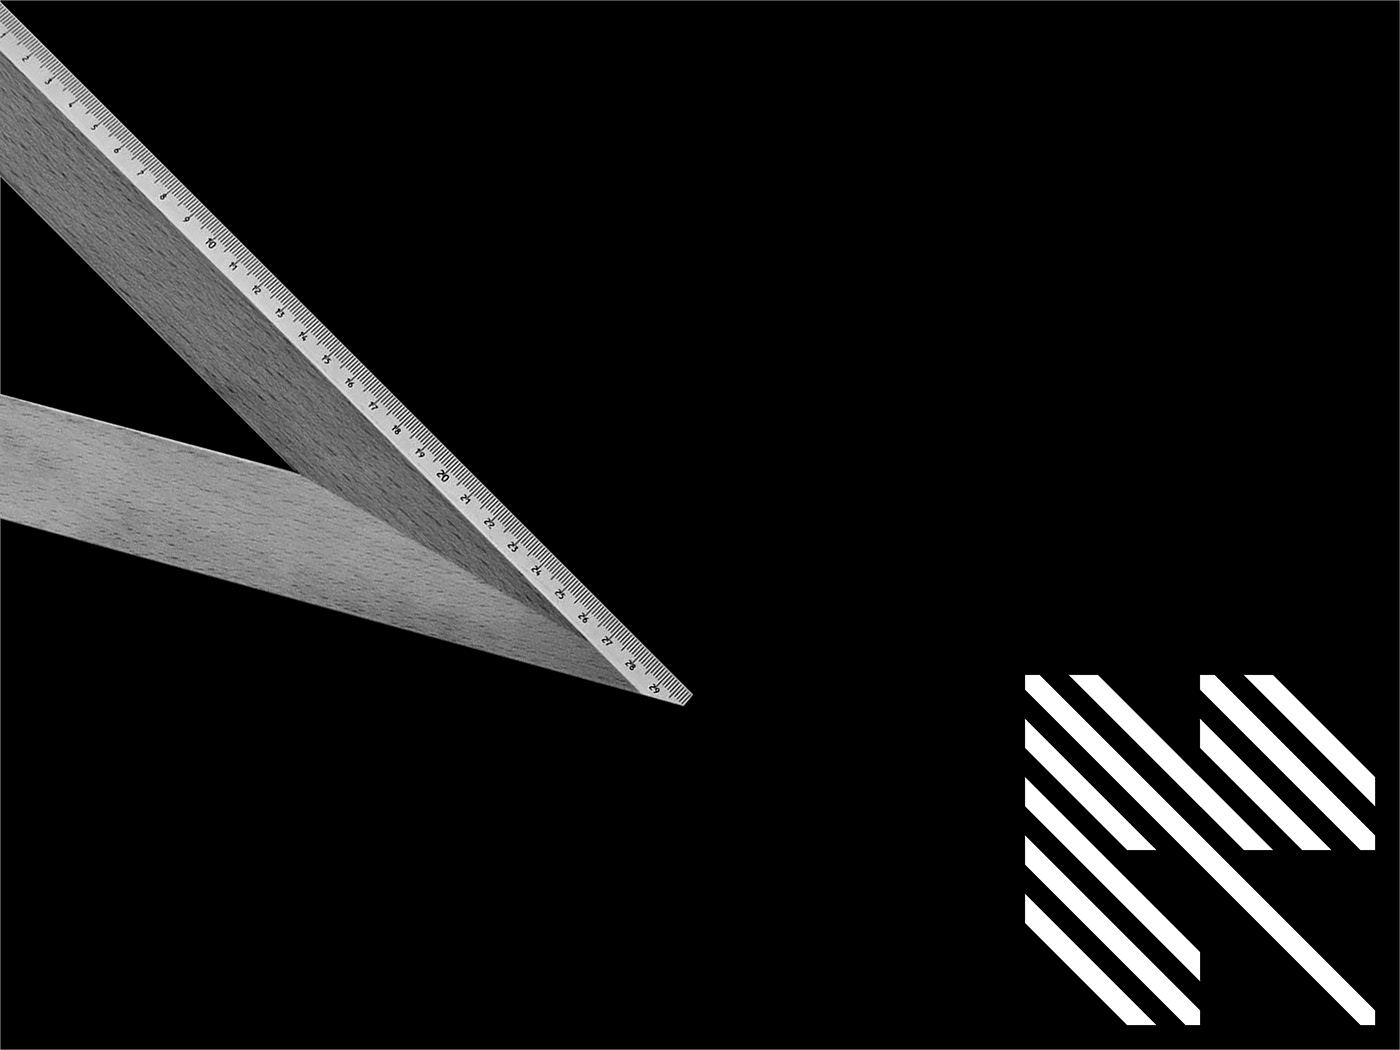 brand geometric logo deisgn graphicdesigh corporate visual identity minimal Black&white